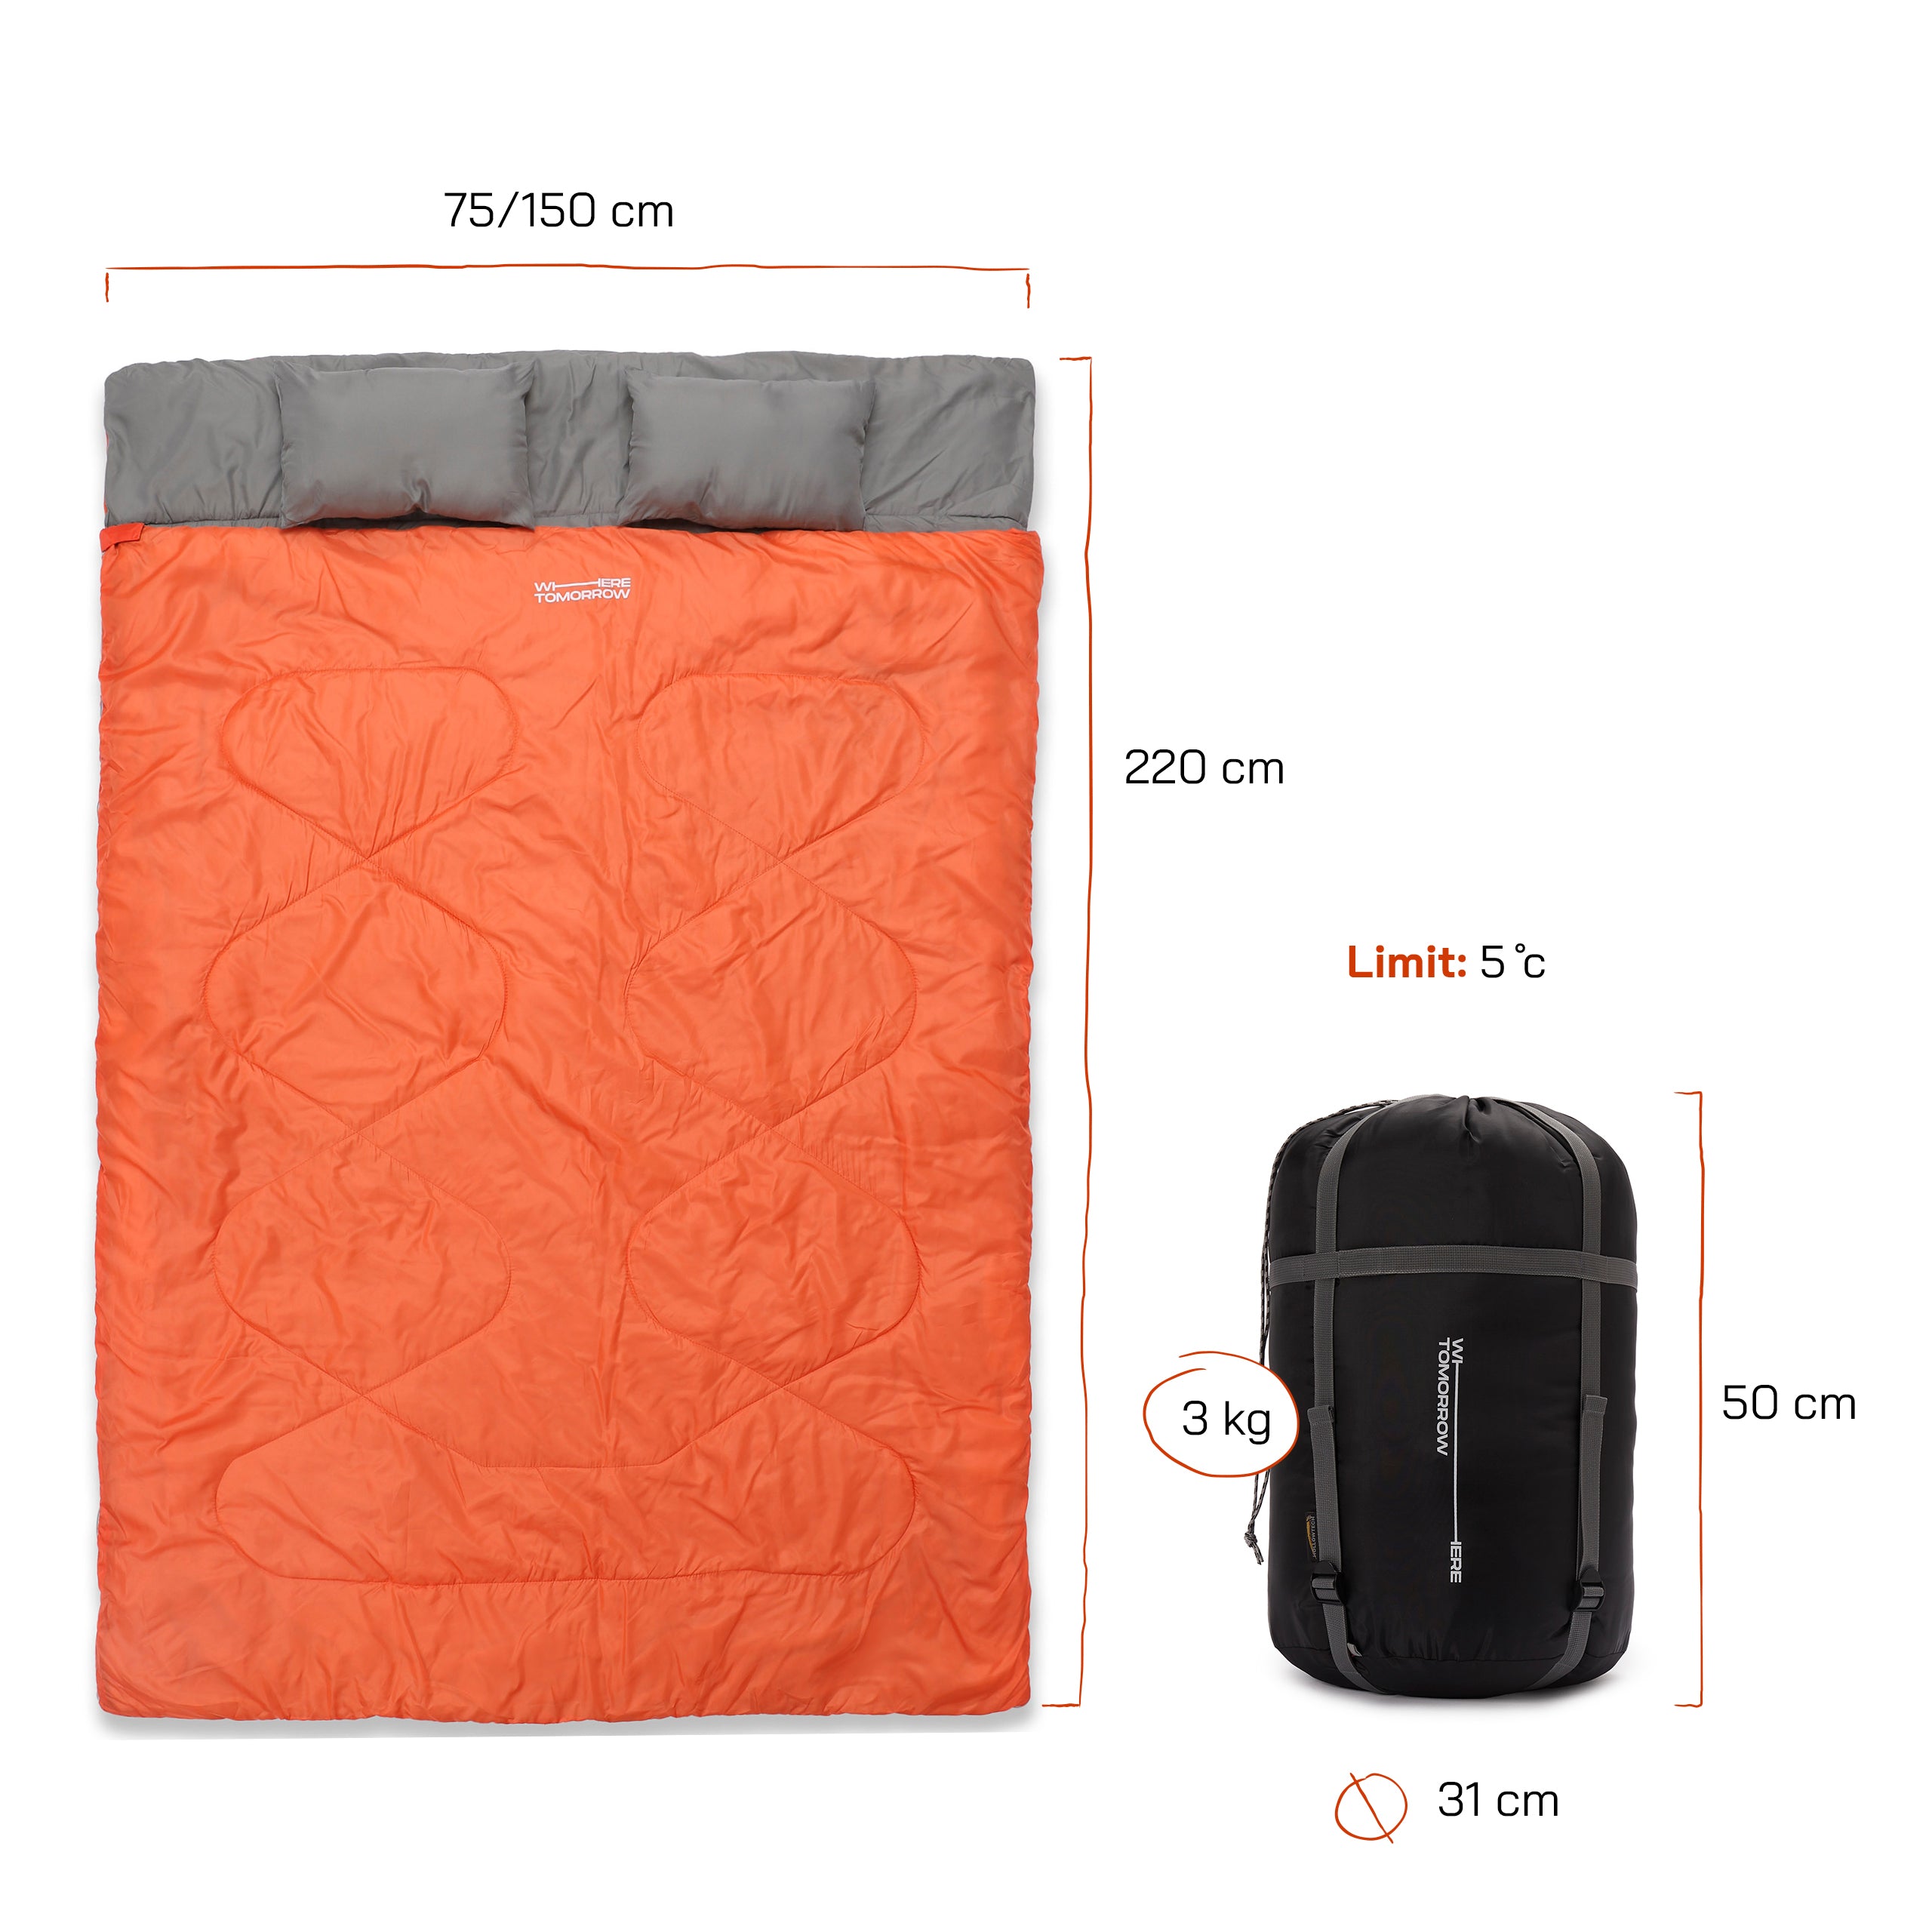 Doppelschlafsack mit Tragetasche - 2-Personen Schlafsack - 190 x 150 cm - Orange